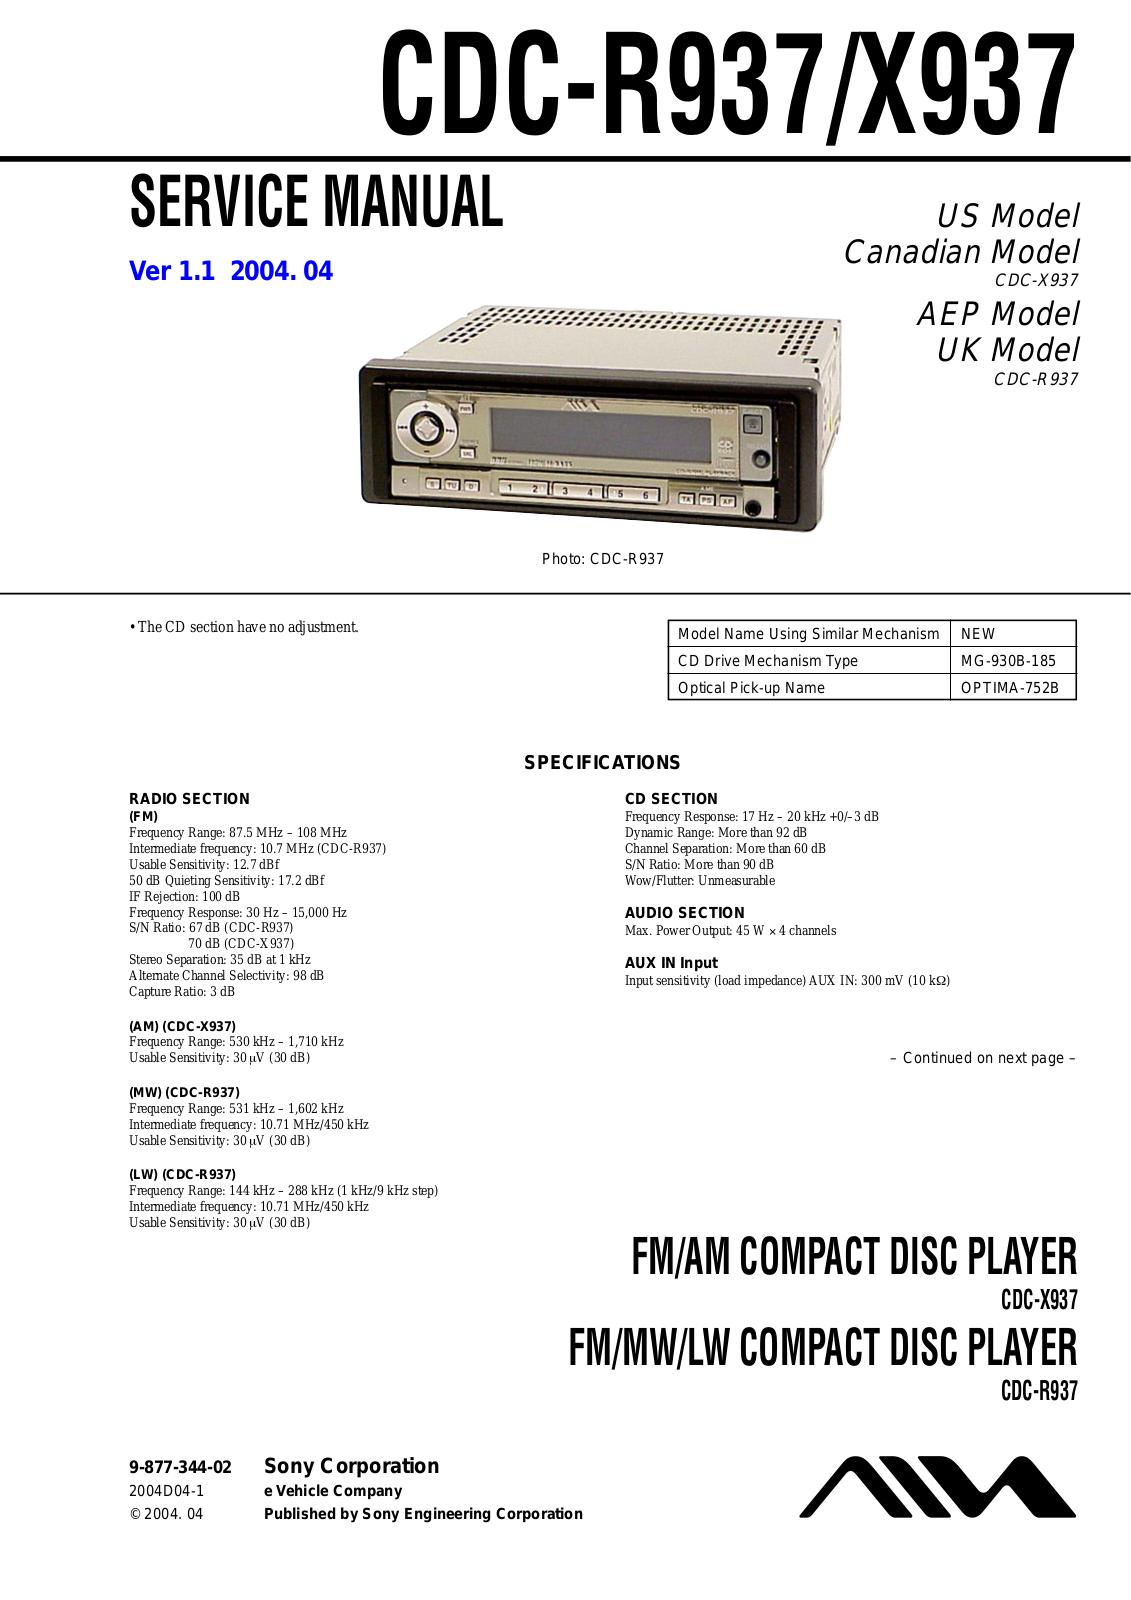 Sony CDCX-937, CDCR-937, CDCX-937 Service manual